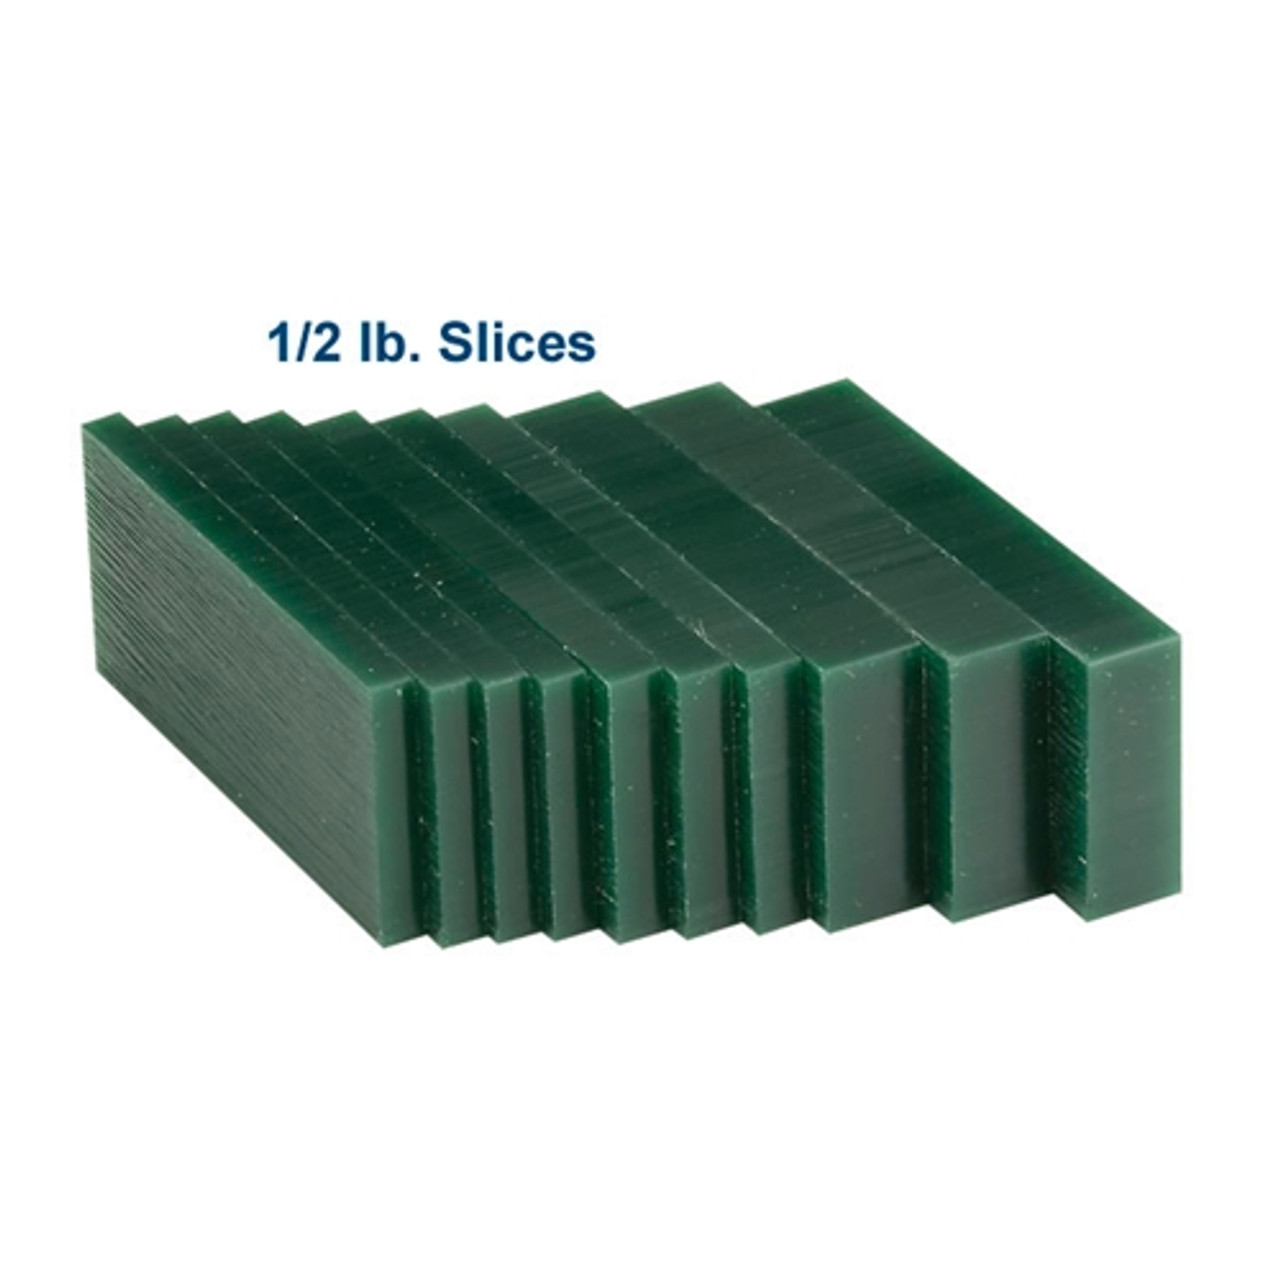 Matt™ Carving Wax Blocks & Slices - 1/2 lb. Slices Green